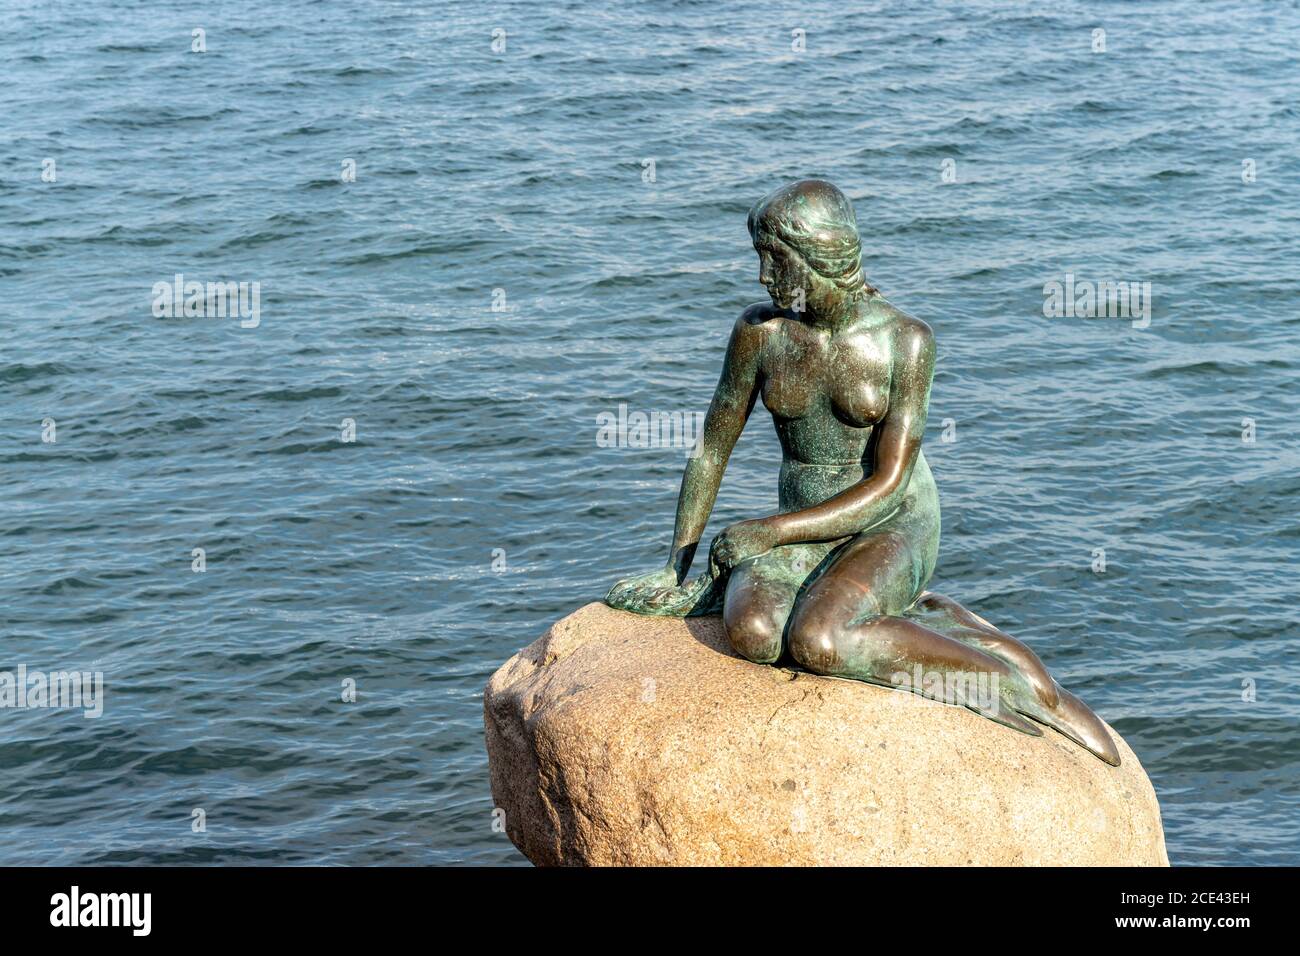 Die berühmte Bronzefigur Die Kleine Meerjungfrau - Den lille Havfrue - an der Uferpromenade Langelinie, Kopenhagen, Dänemark, Europa  |  the famous br Stock Photo